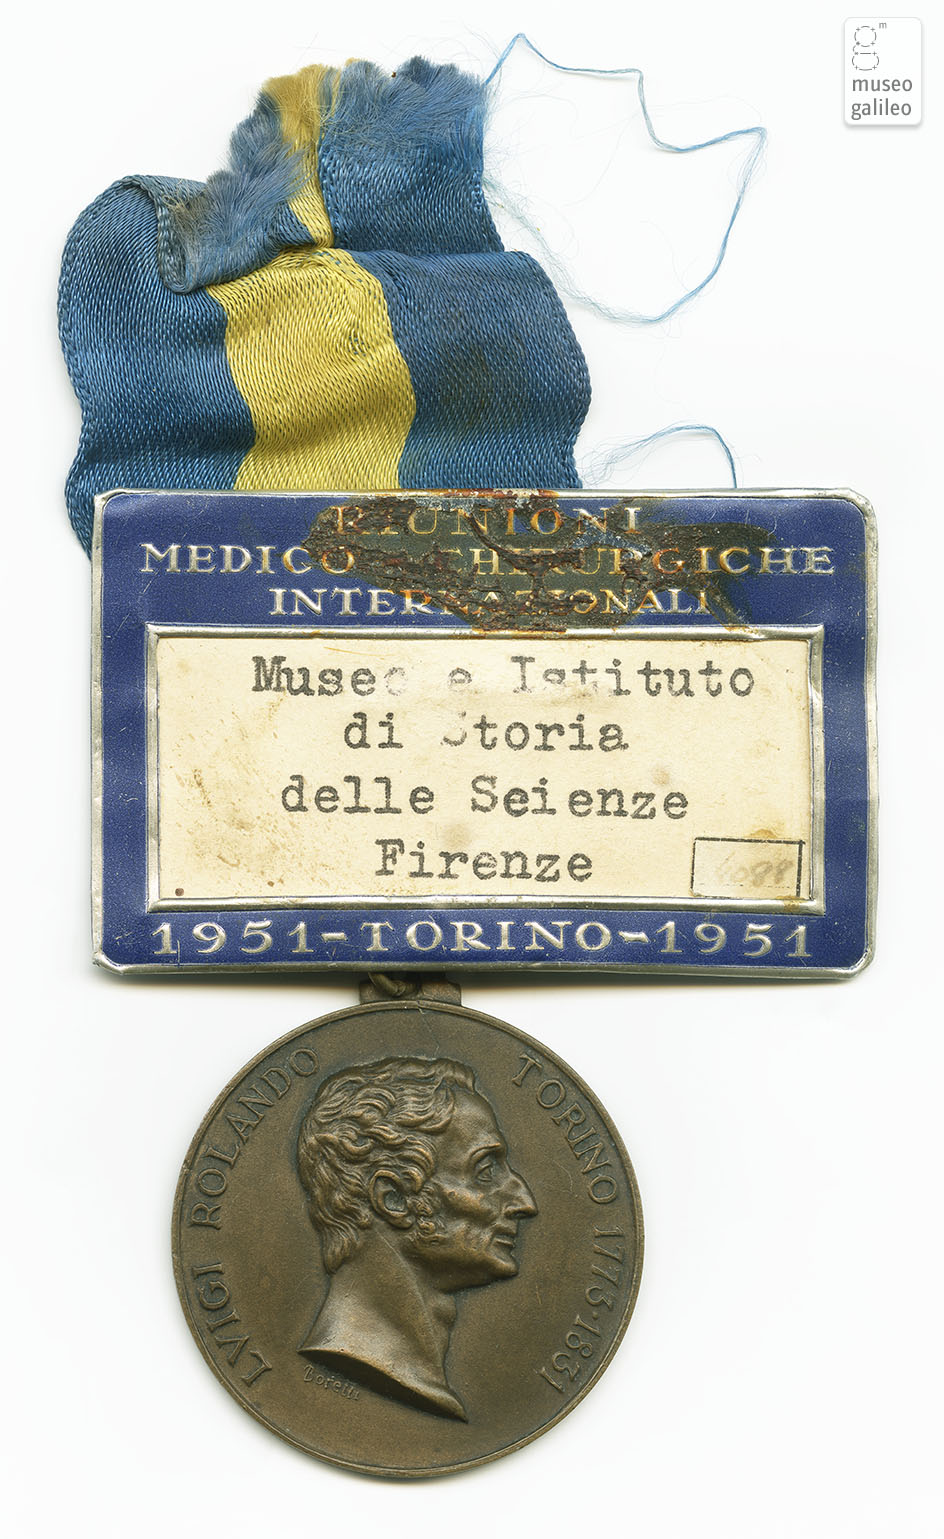 Riunioni Medico Chirurgiche Internazionali (Torino, 1951) - obverse